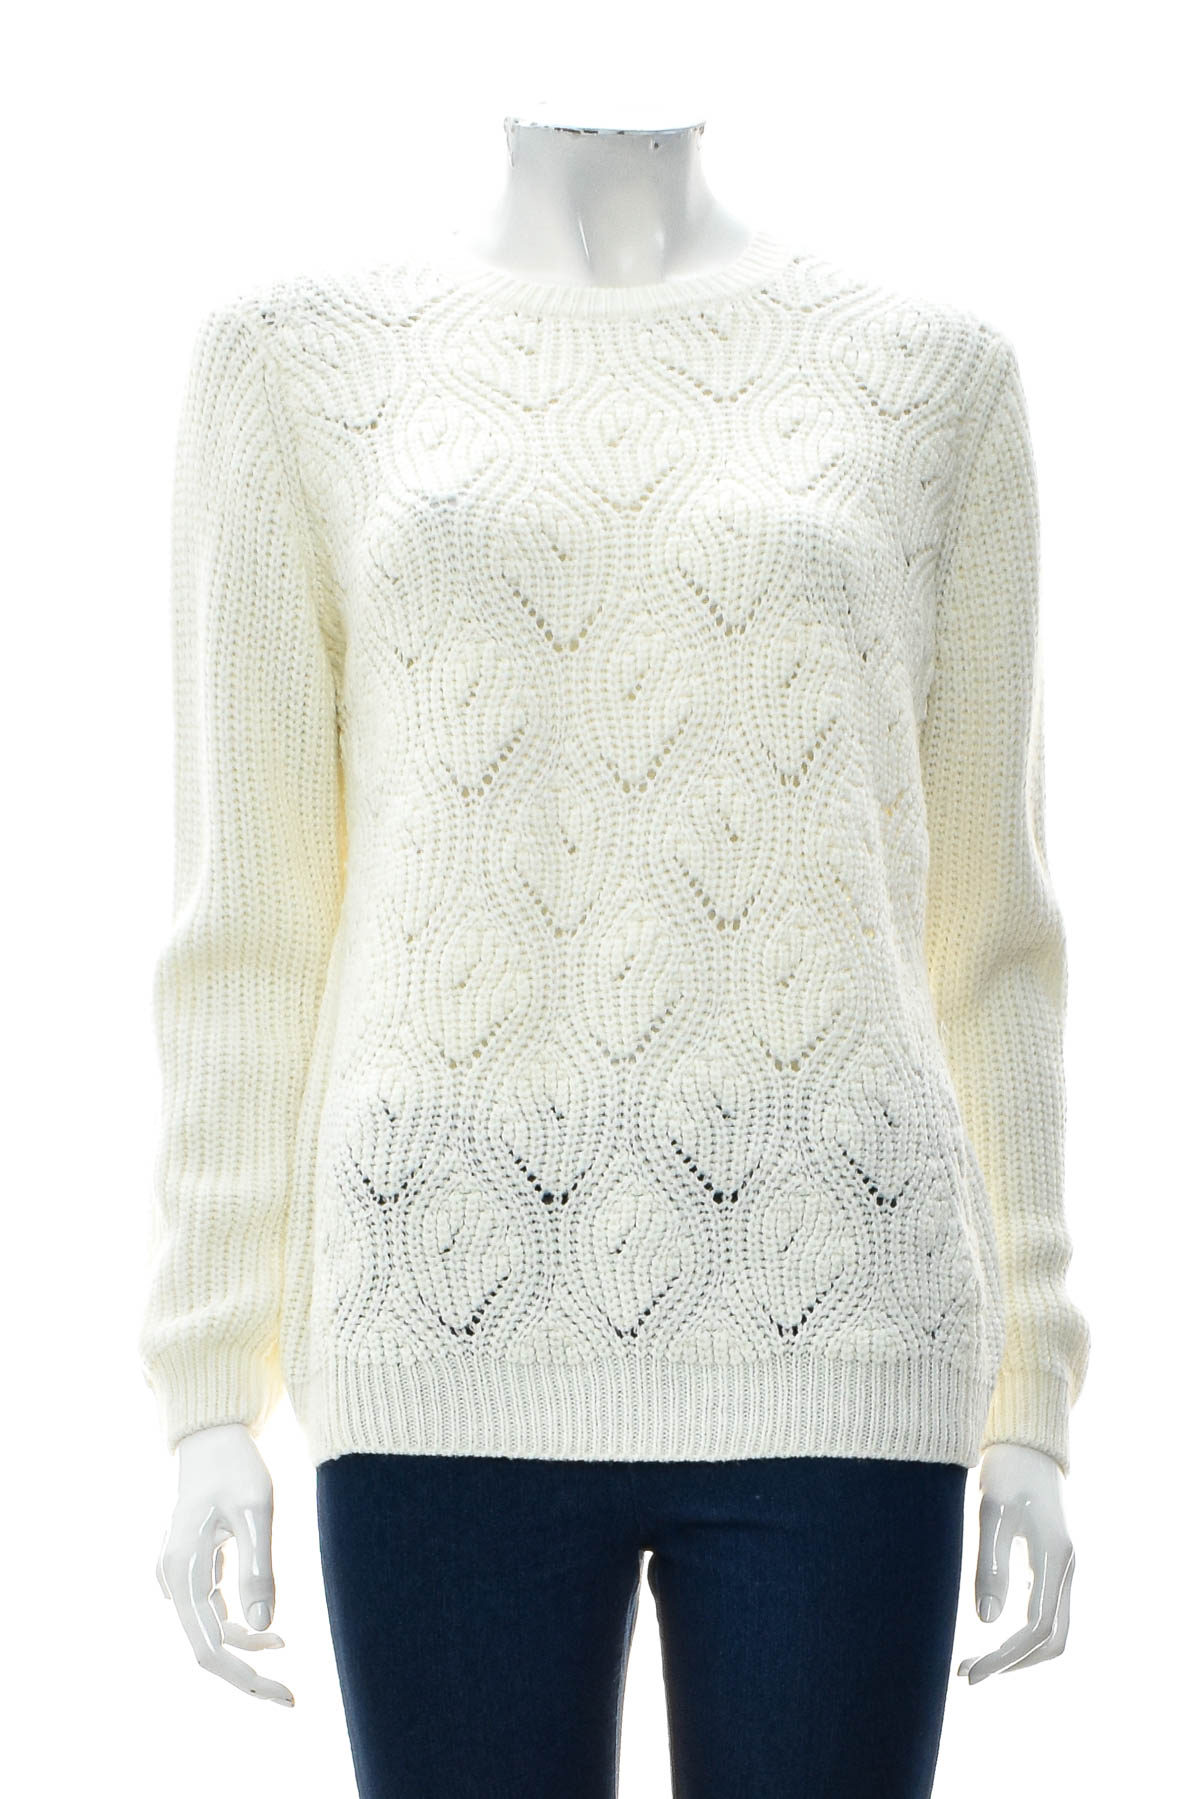 Women's sweater - Suzy Shier - 0